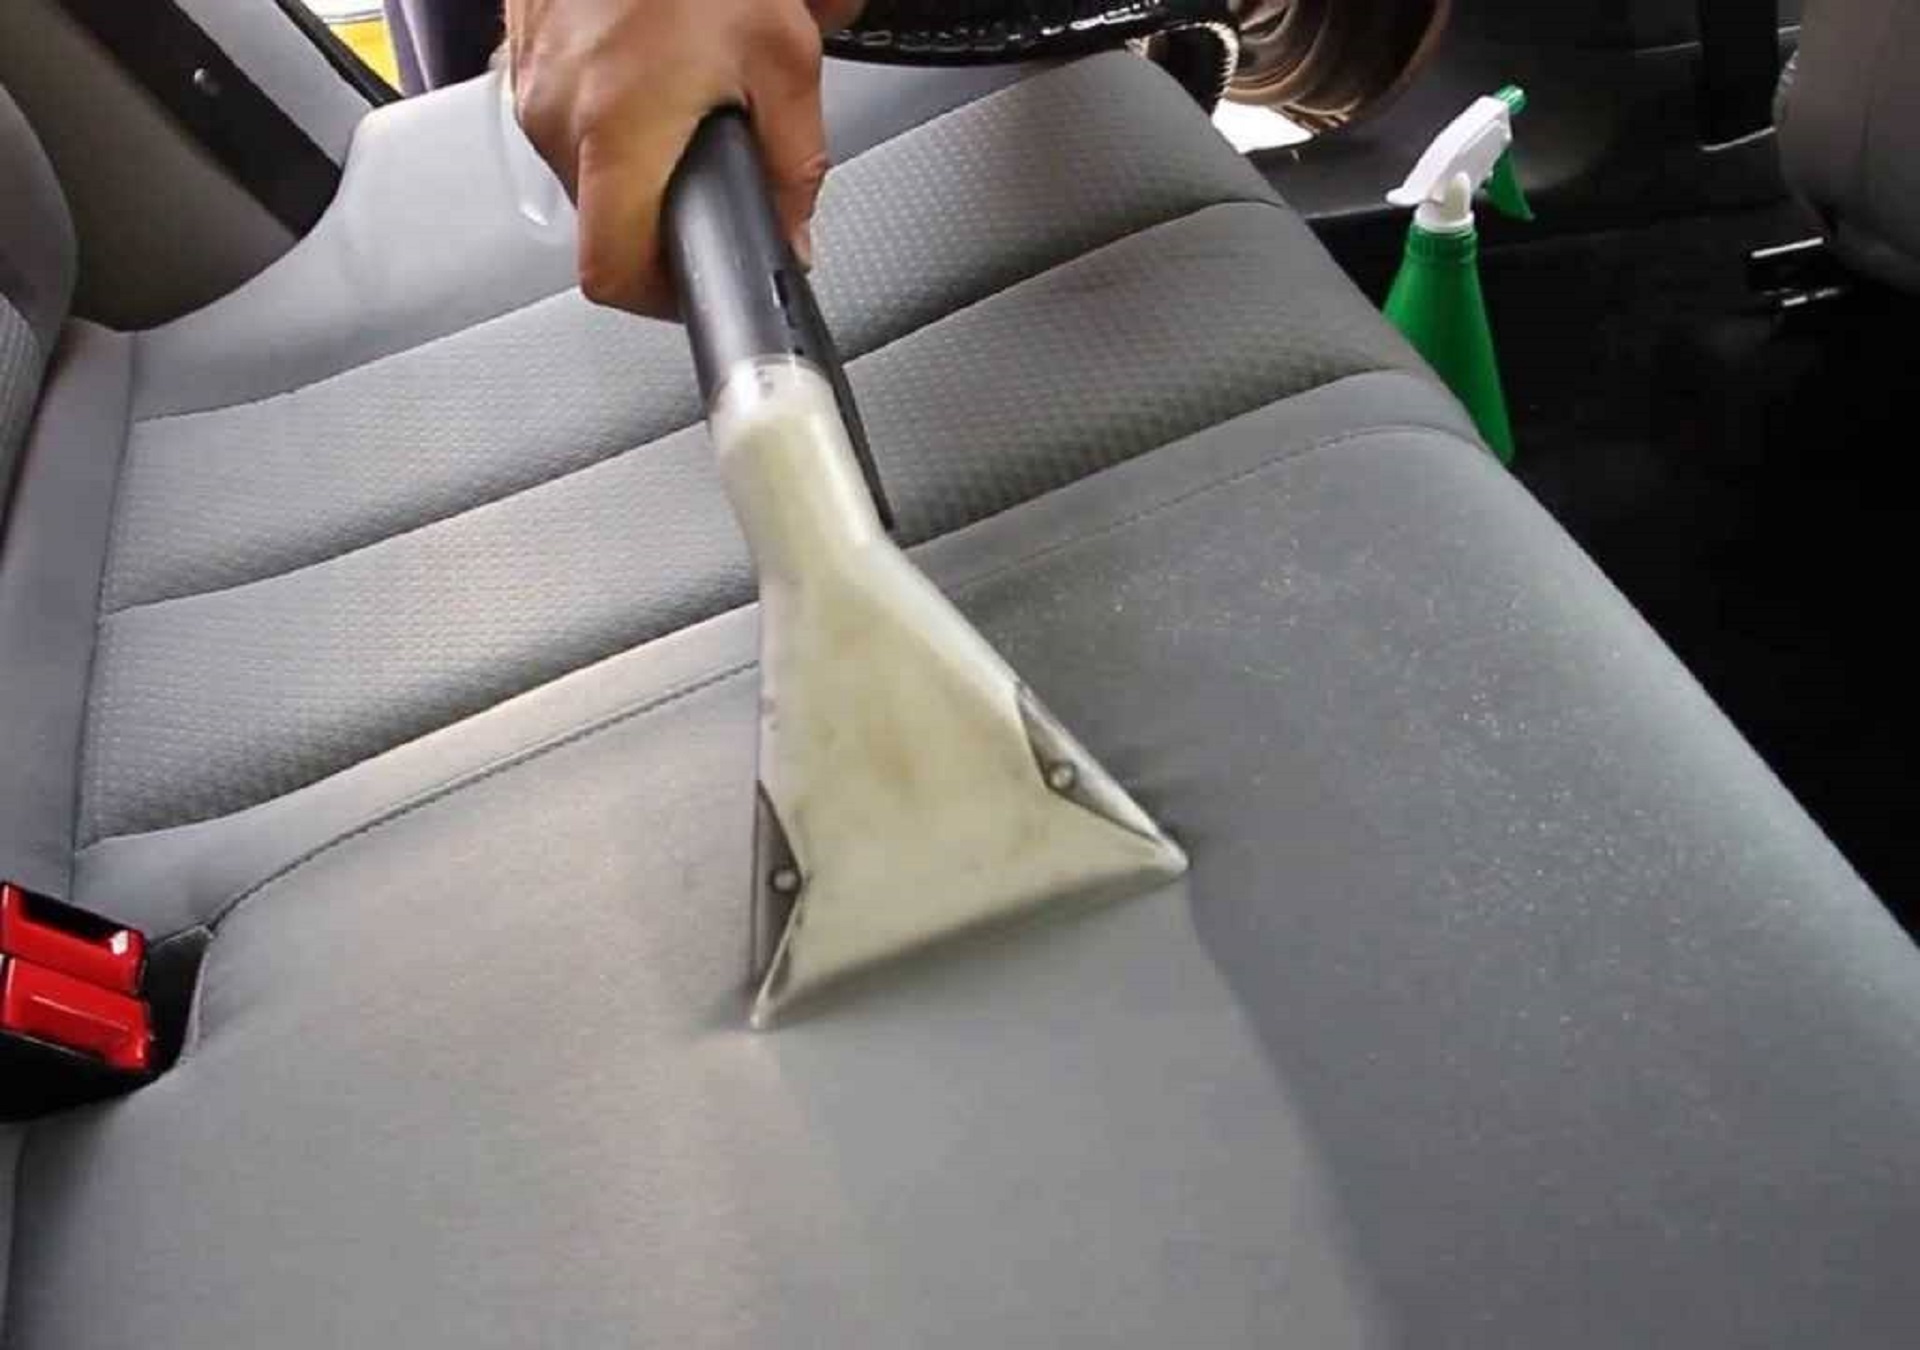 Как избавиться от запаха молока в машине?